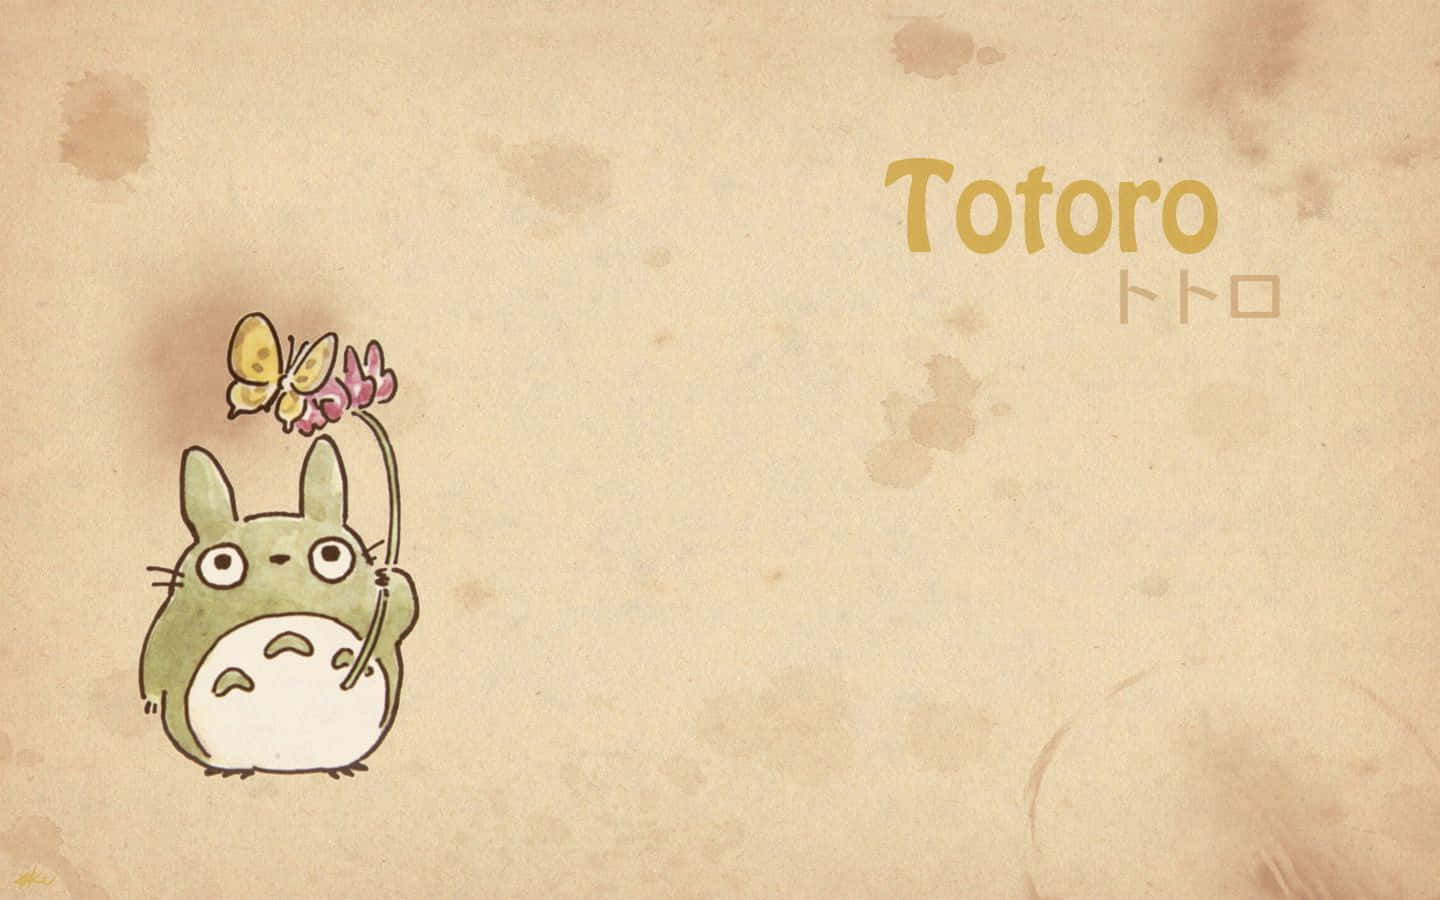 Einliebevoller Moment Zwischen Satsuki Und Ihren Geisterfreunden Totoro Und Catbus.